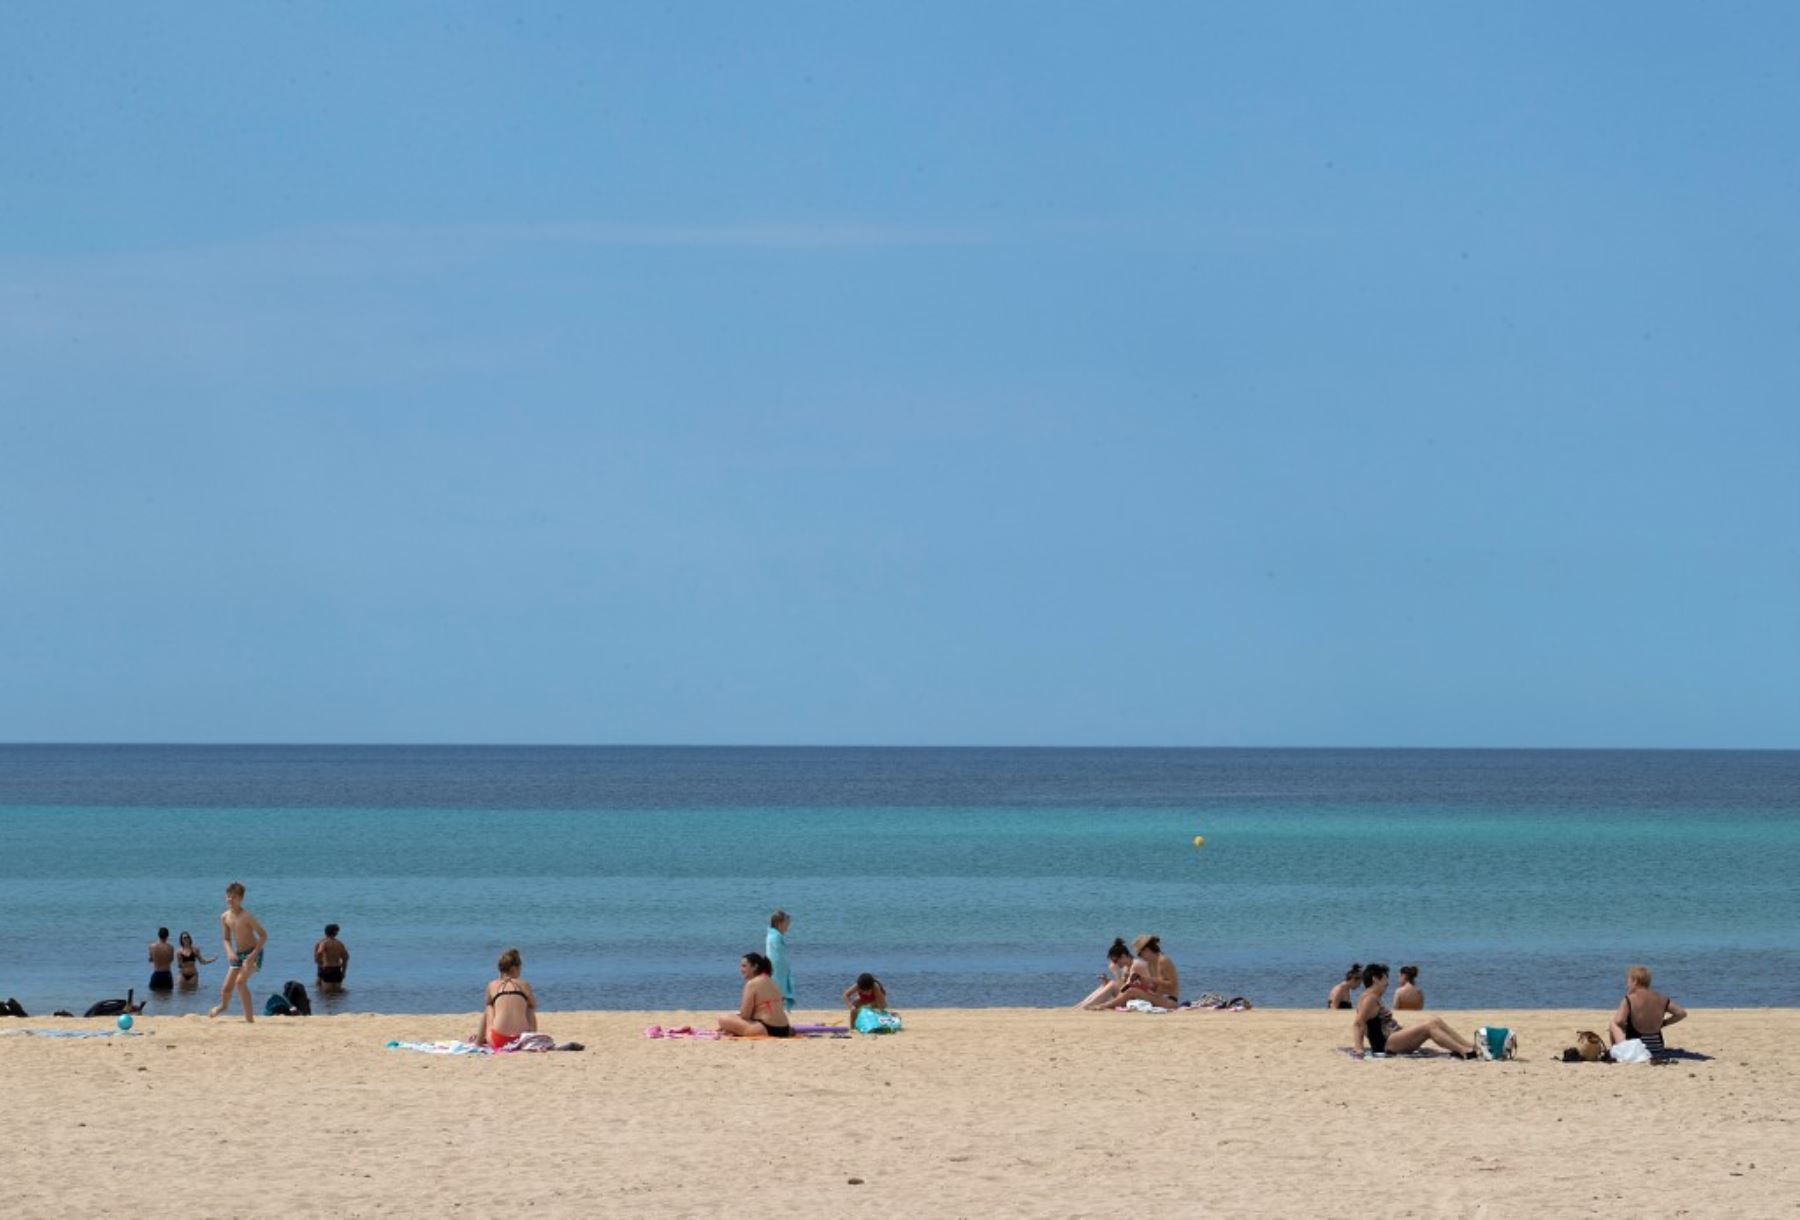 La gente toma el sol en la playa de Palma en Palma de Mallorca el 25 de mayo de 2020, el primer día después de que las playas reabrieron en algunas partes del país después de cierres de meses. Foto: AFP